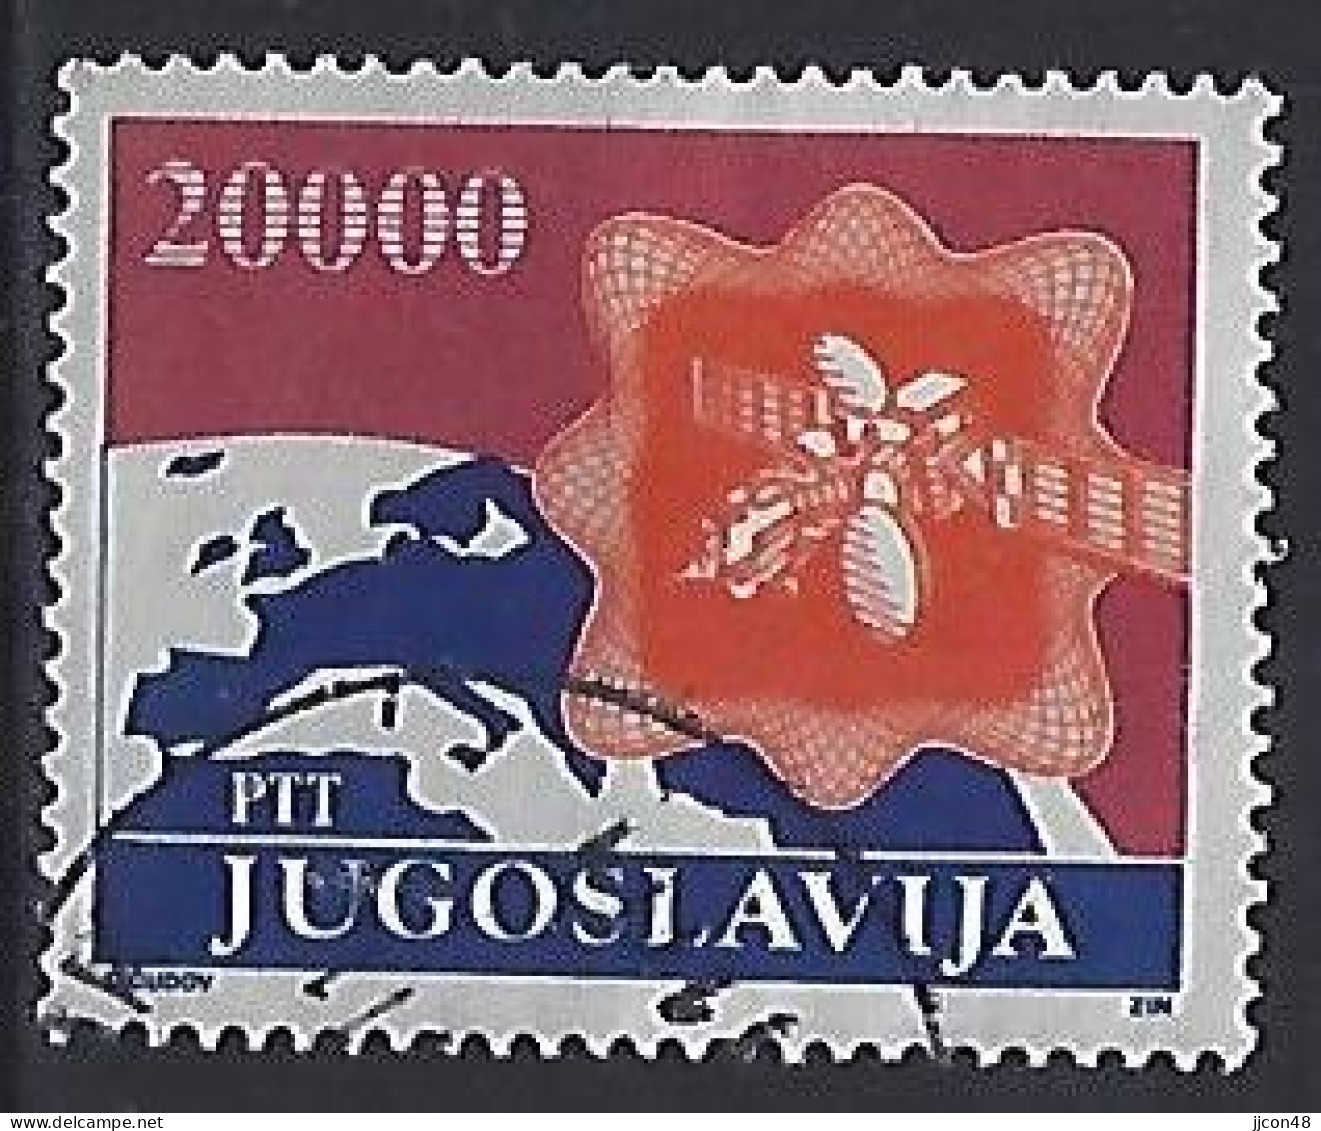 Jugoslavia 1989  Postdienst  (o) Mi.2362 - Oblitérés